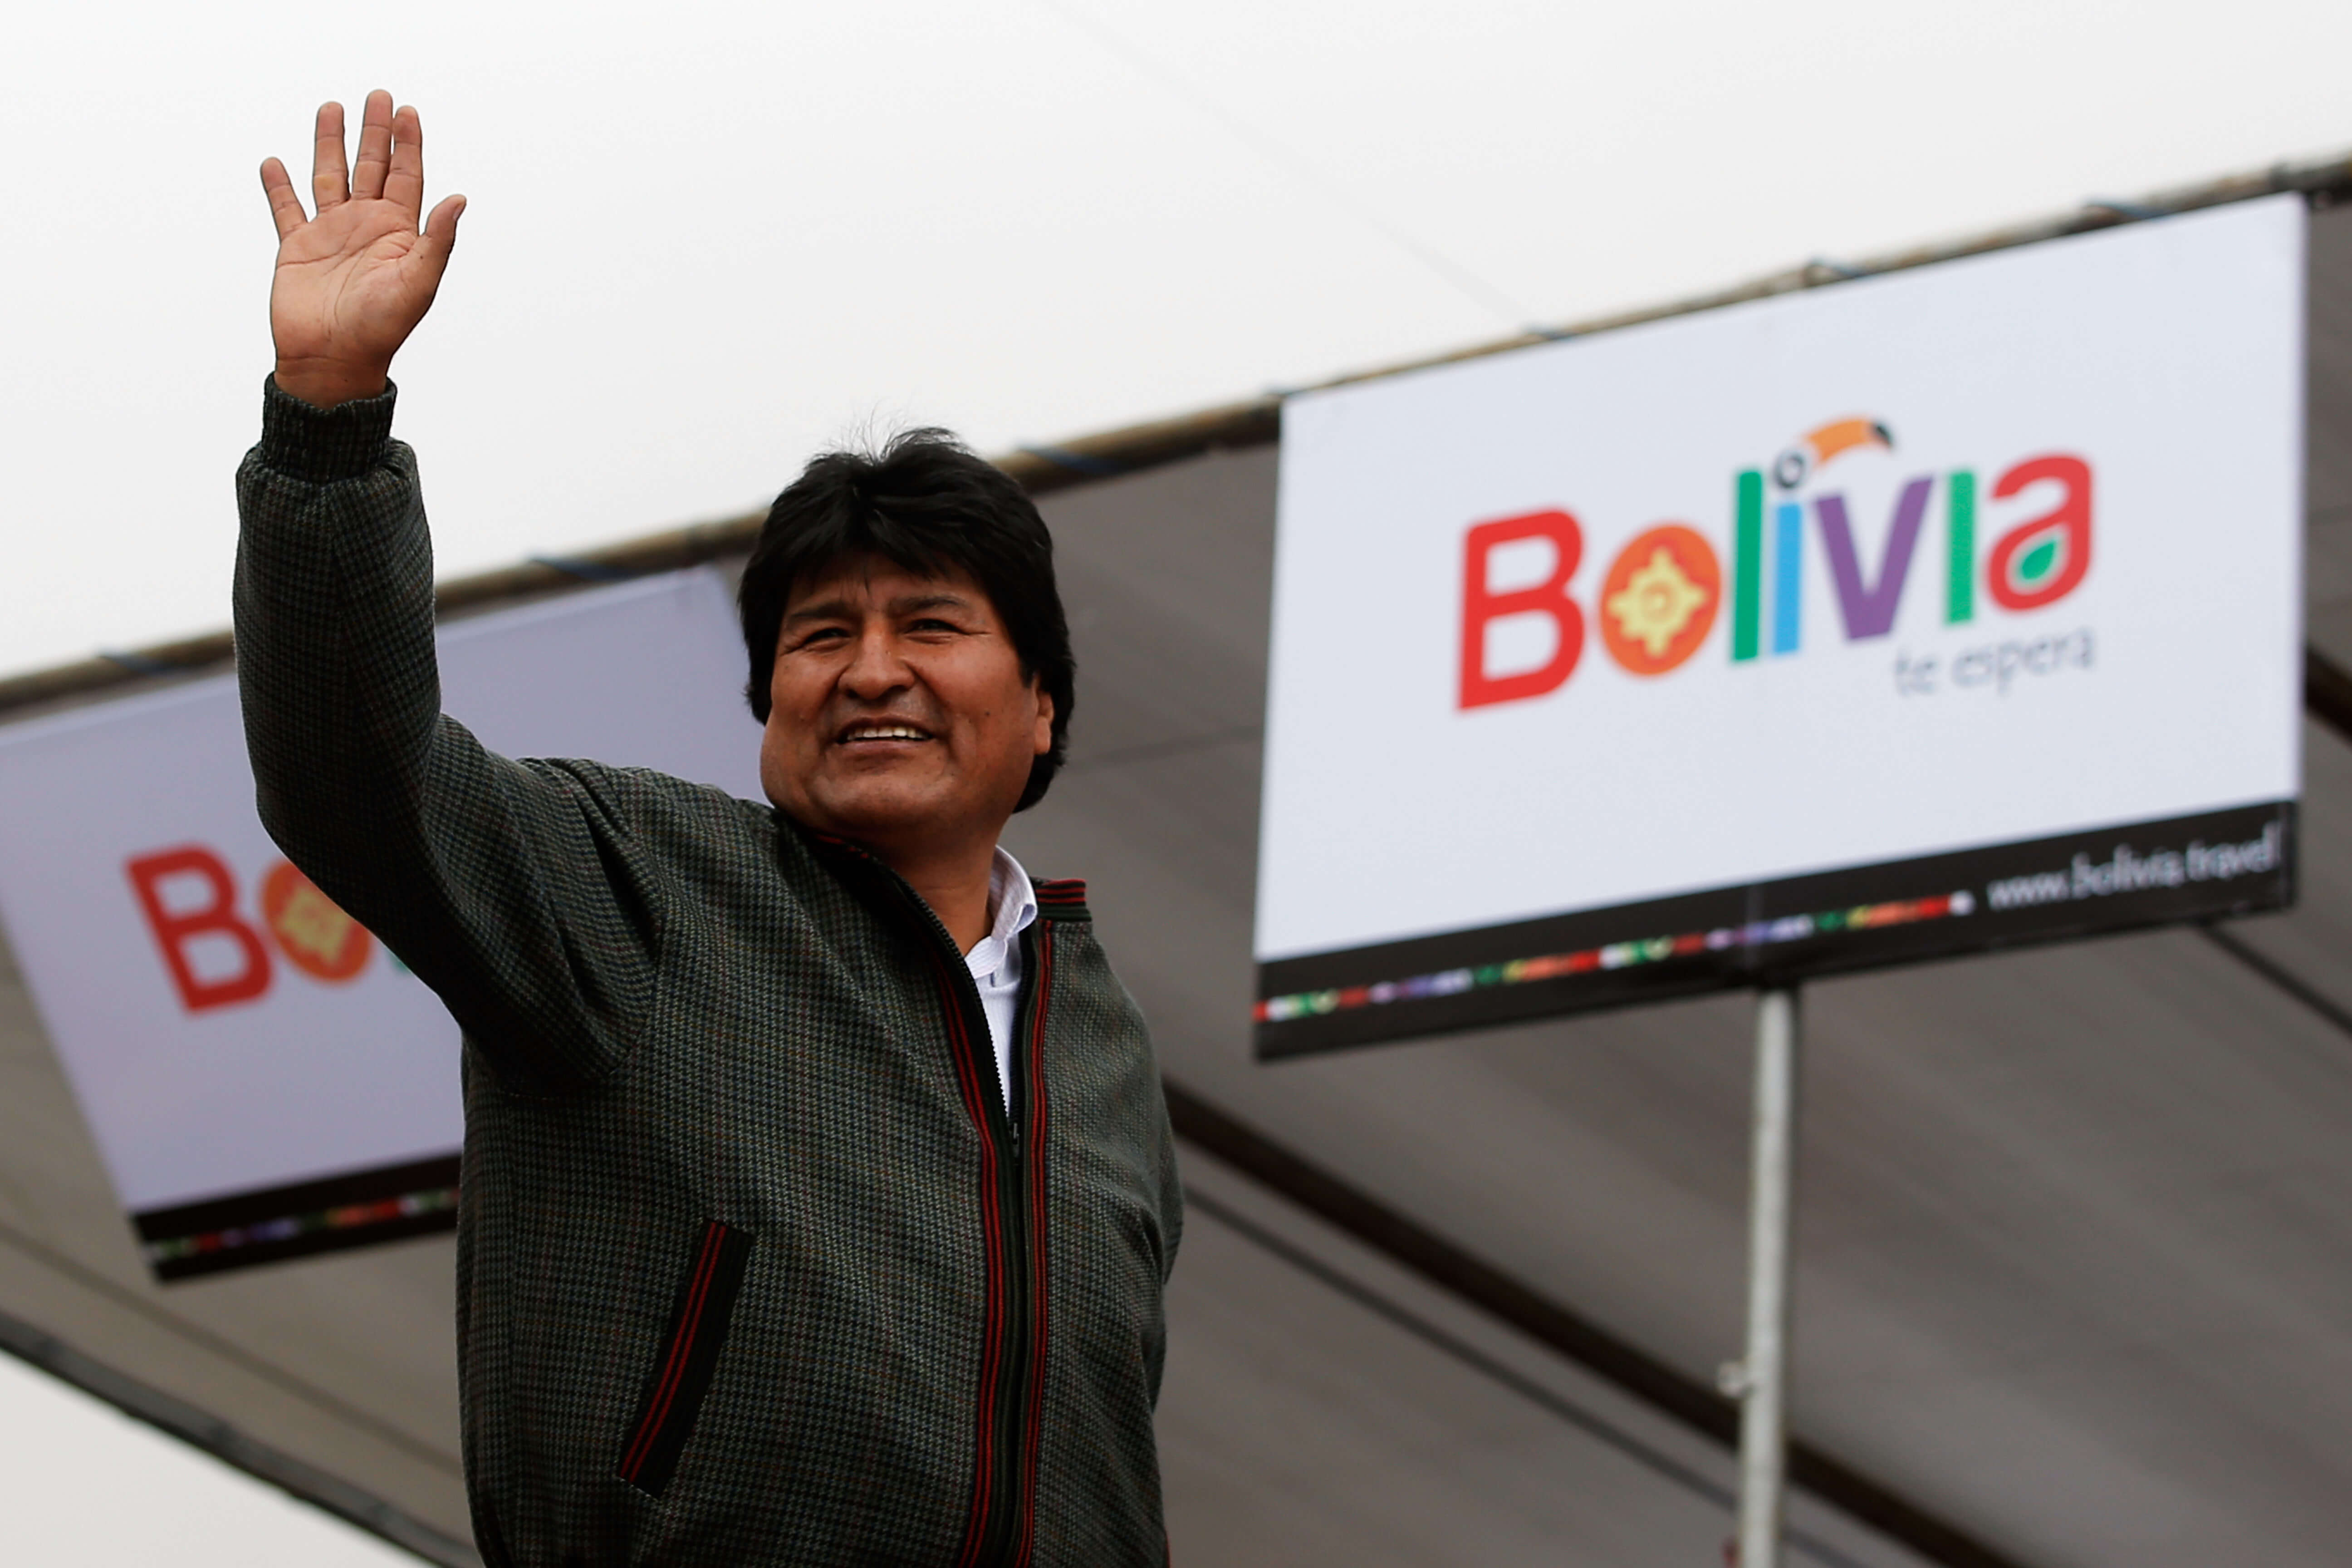 El presidente de Bolivia, Evo Morales, durante el Rally Dakar 2014 el 12 de enero de 2014 en Uyuni, Bolivia. (Getty Images/archivo)